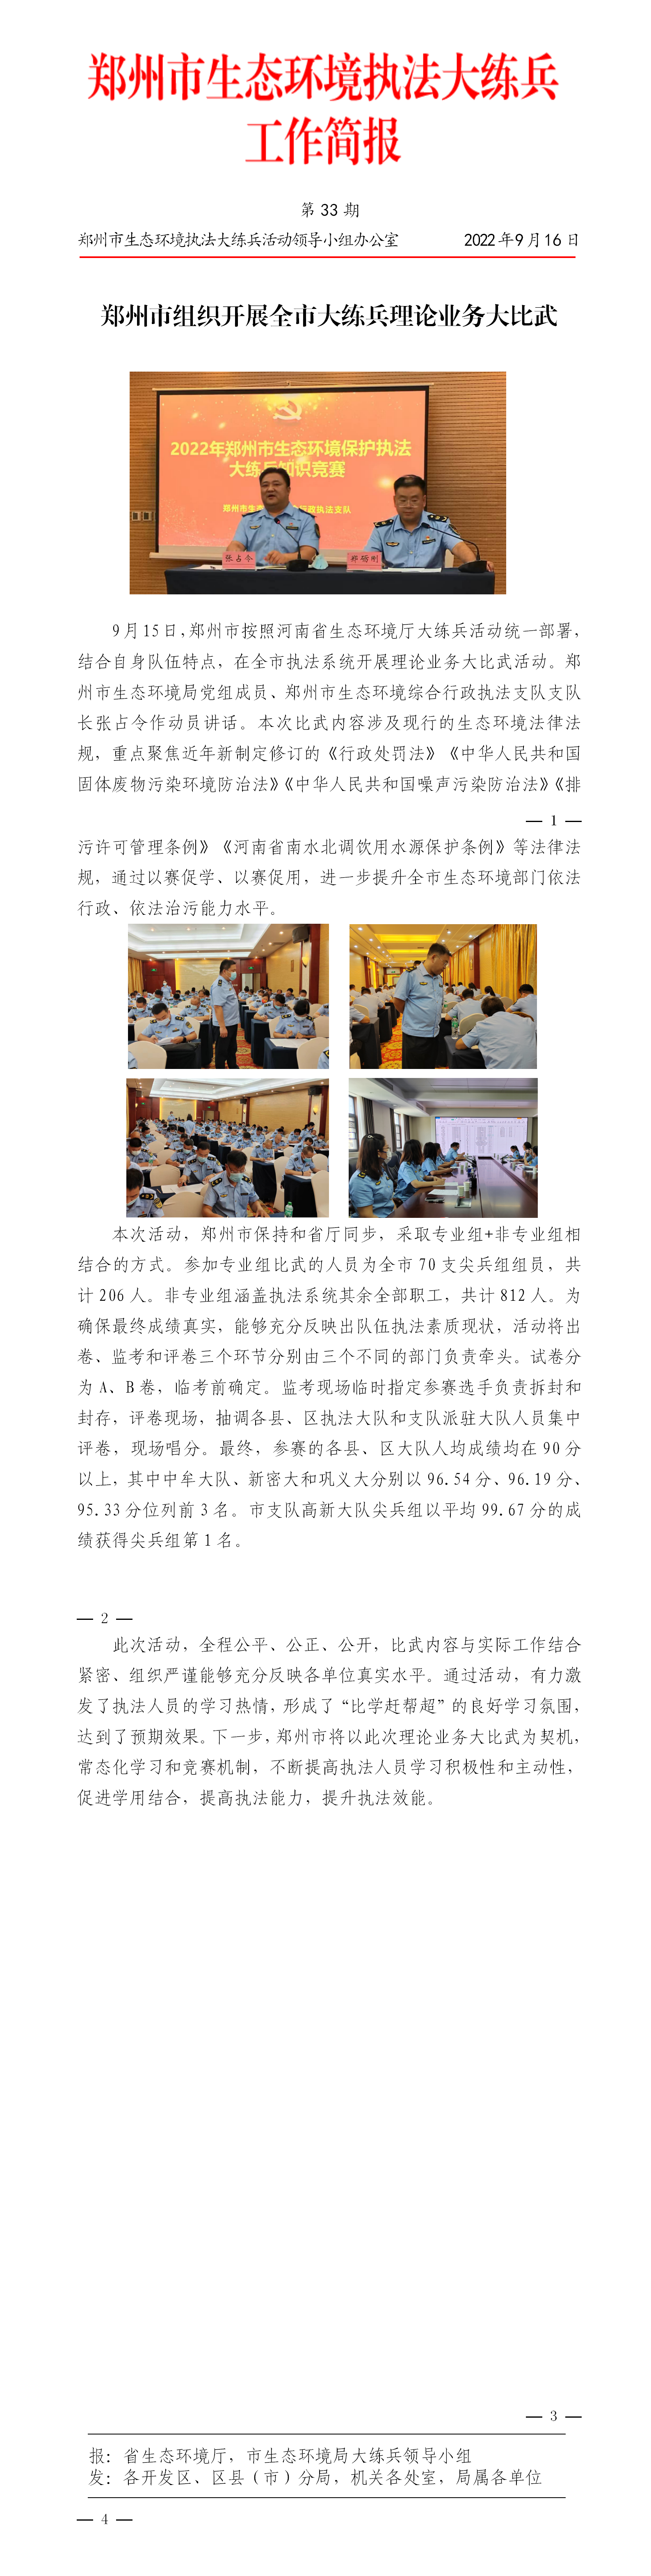 第33期郑州市组织开展全市大练兵理论业务大比武_01.png